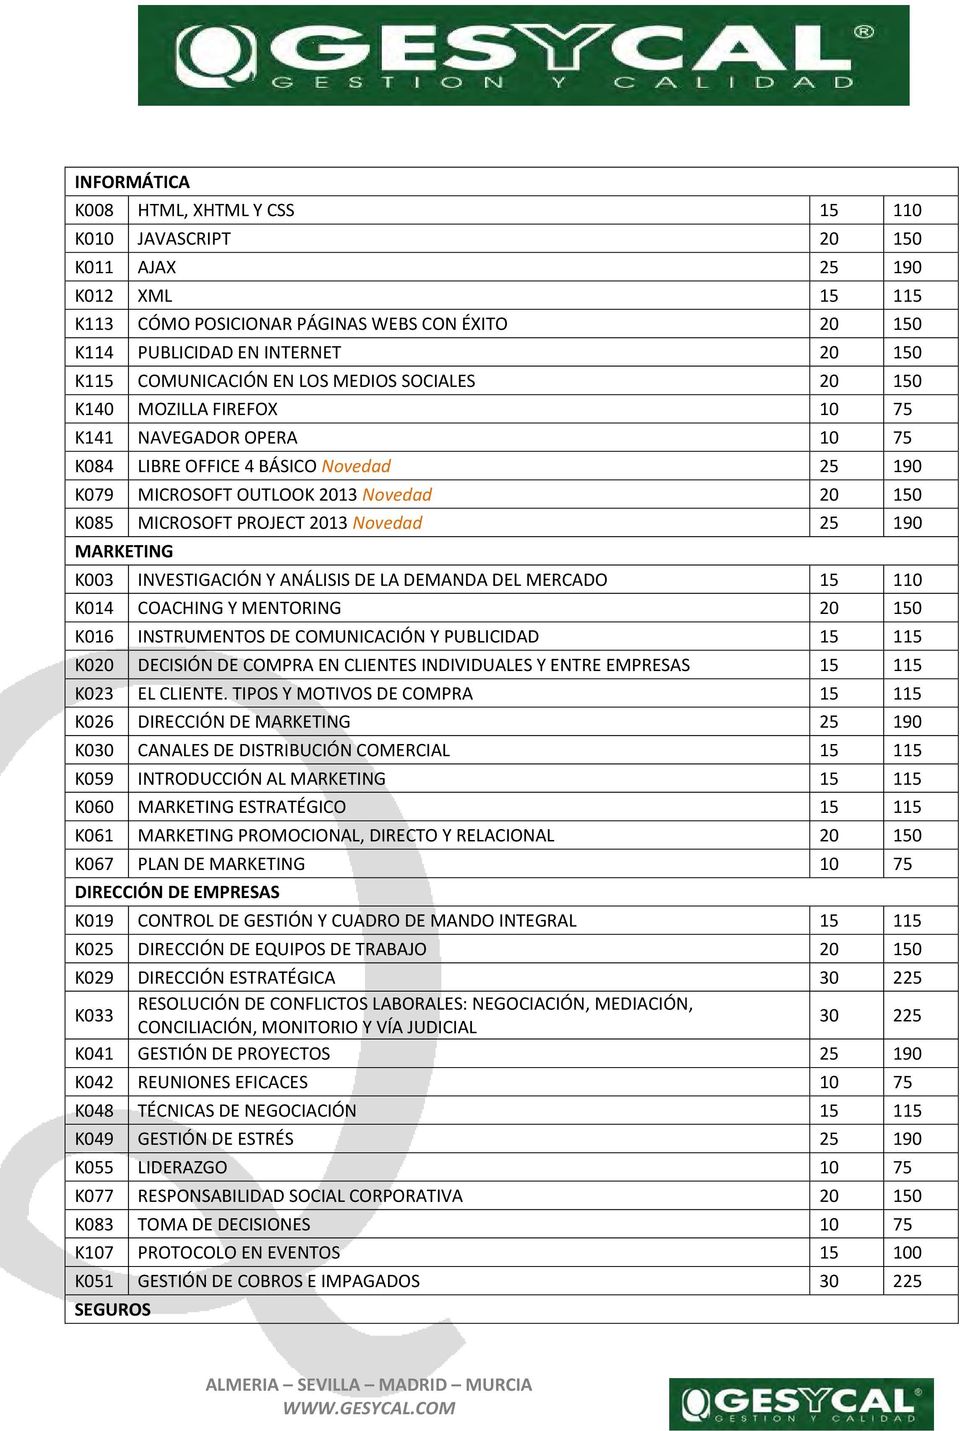 PROJECT 2013 Novedad 25 190 MARKETING K003 INVESTIGACIÓN Y ANÁLISIS DE LA DEMANDA DEL MERCADO 15 110 K014 COACHING Y MENTORING 20 150 K016 INSTRUMENTOS DE COMUNICACIÓN Y PUBLICIDAD 15 115 K020